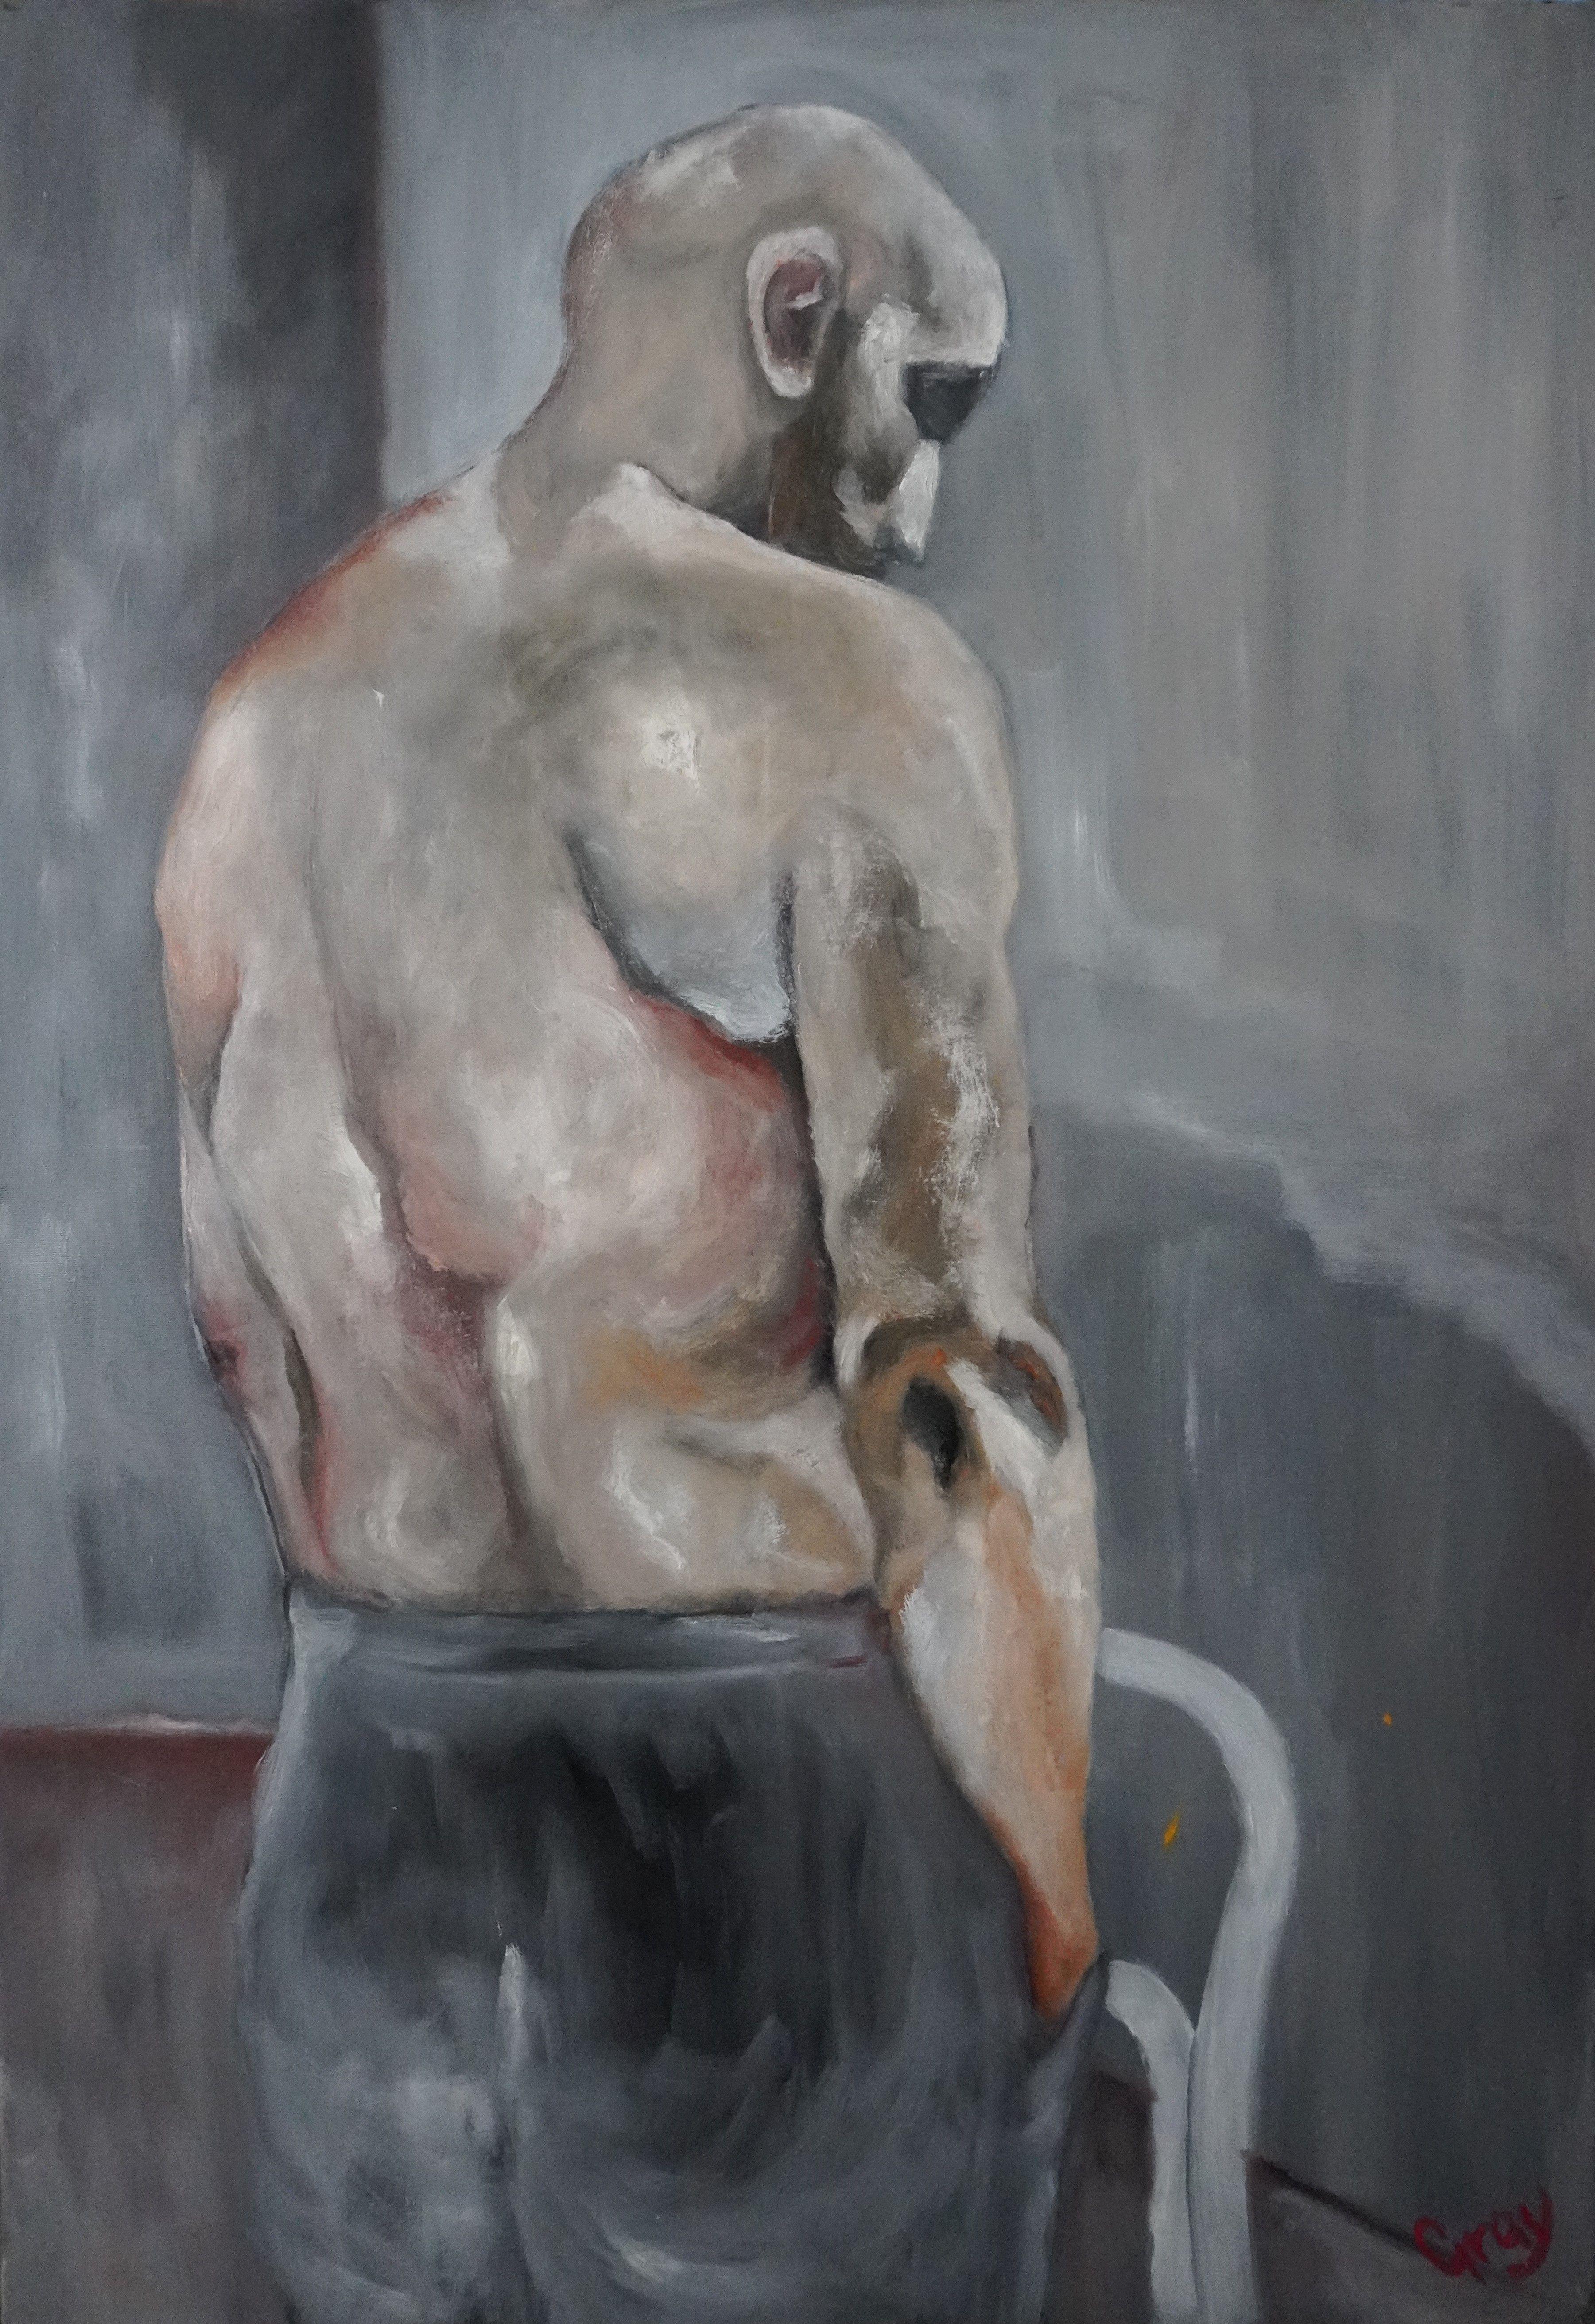 Stand Alone, Peinture, Huile sur toile - Painting de Gray Fairweather